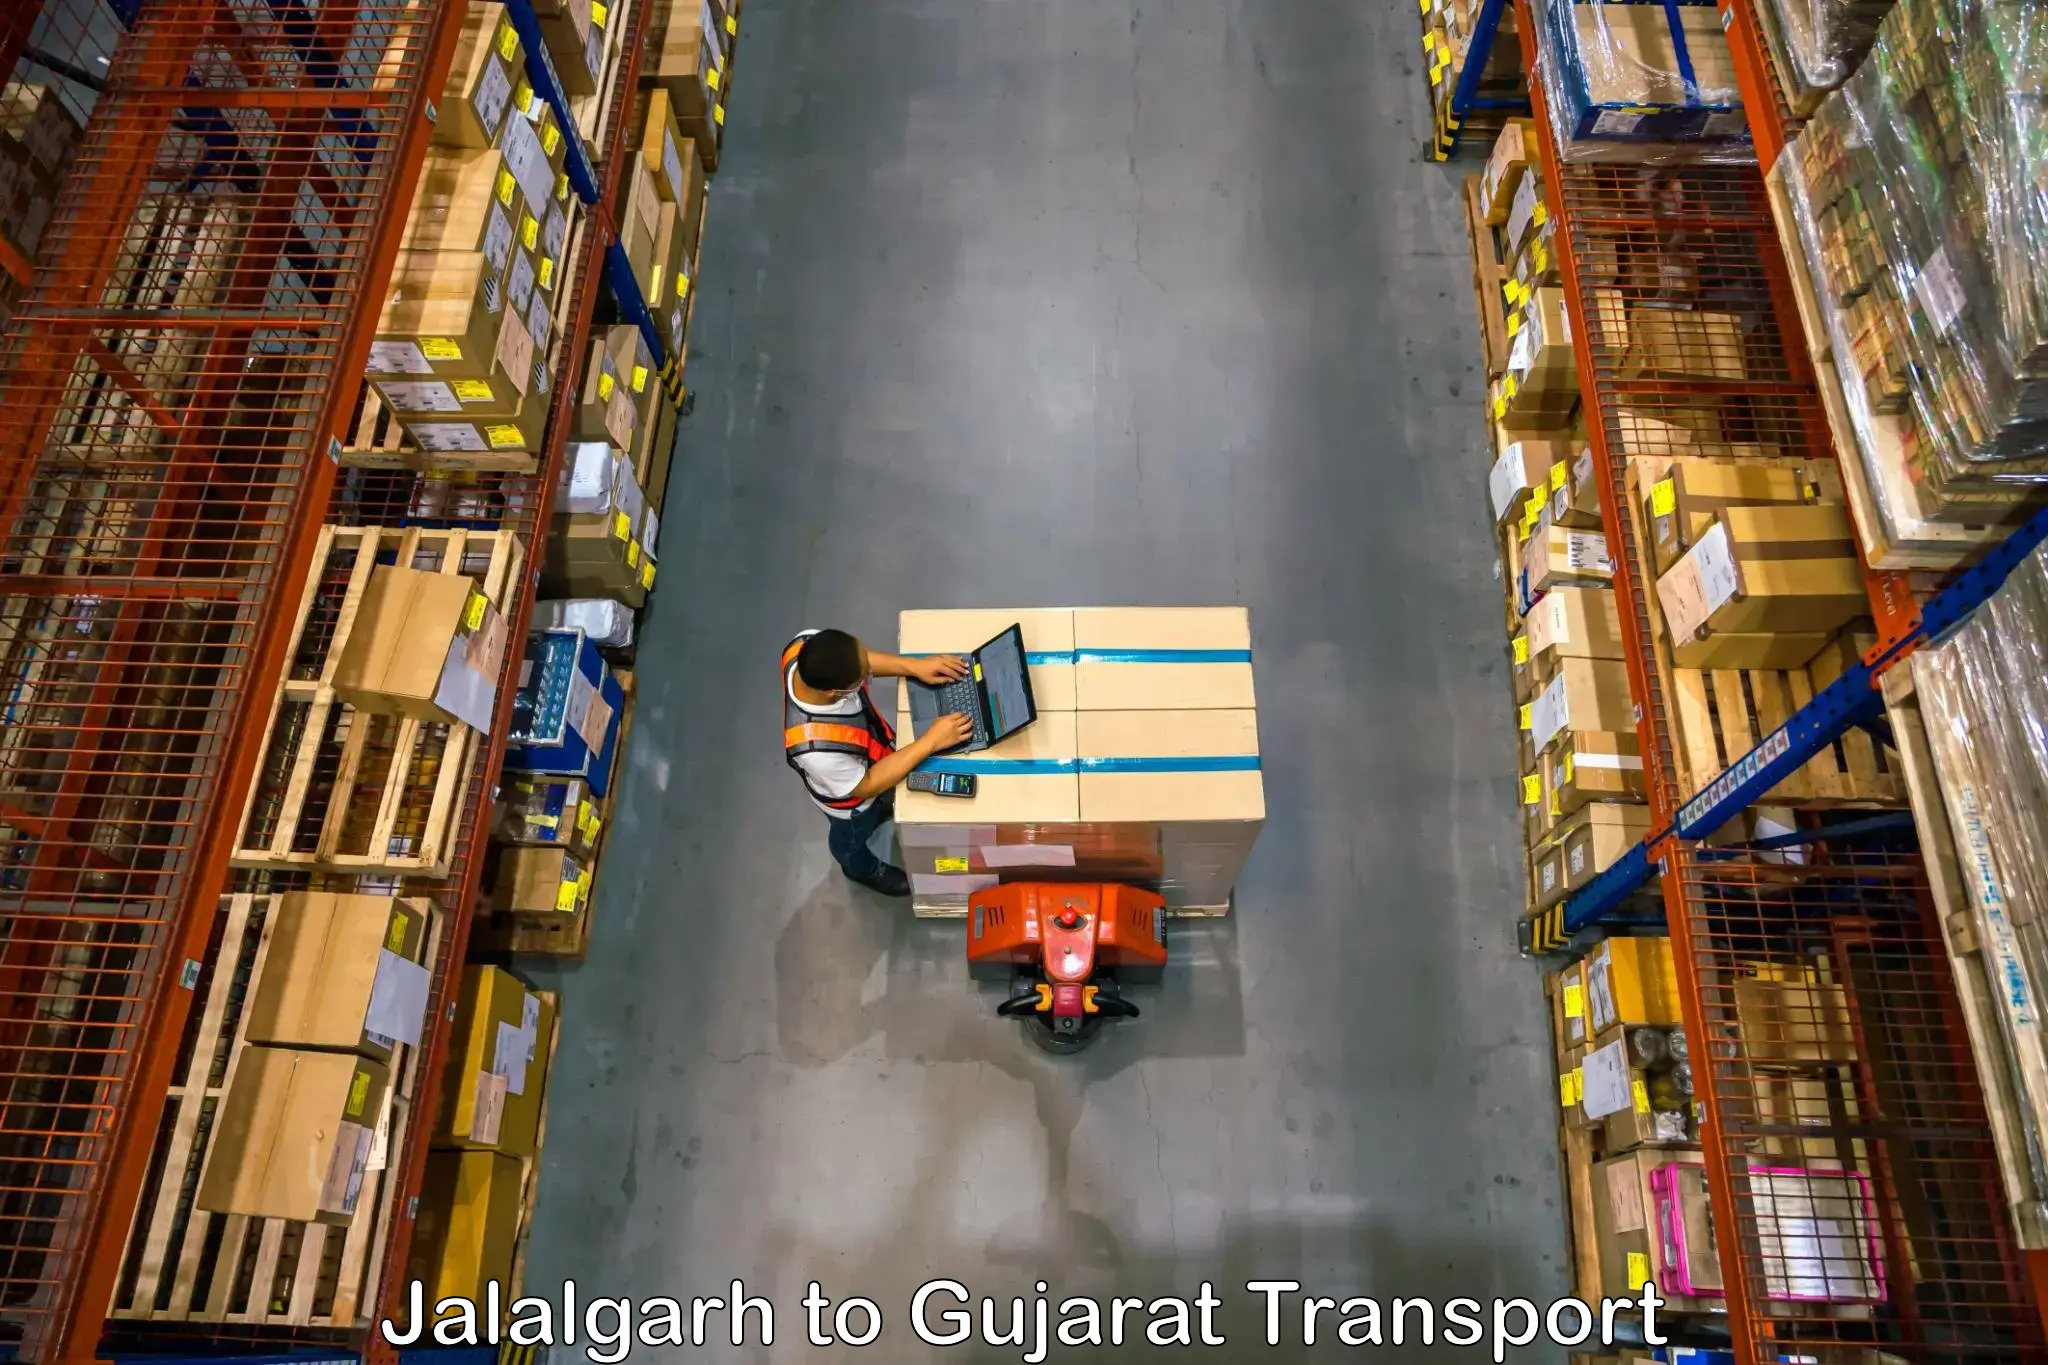 Transportation services Jalalgarh to IIT Gandhi Nagar